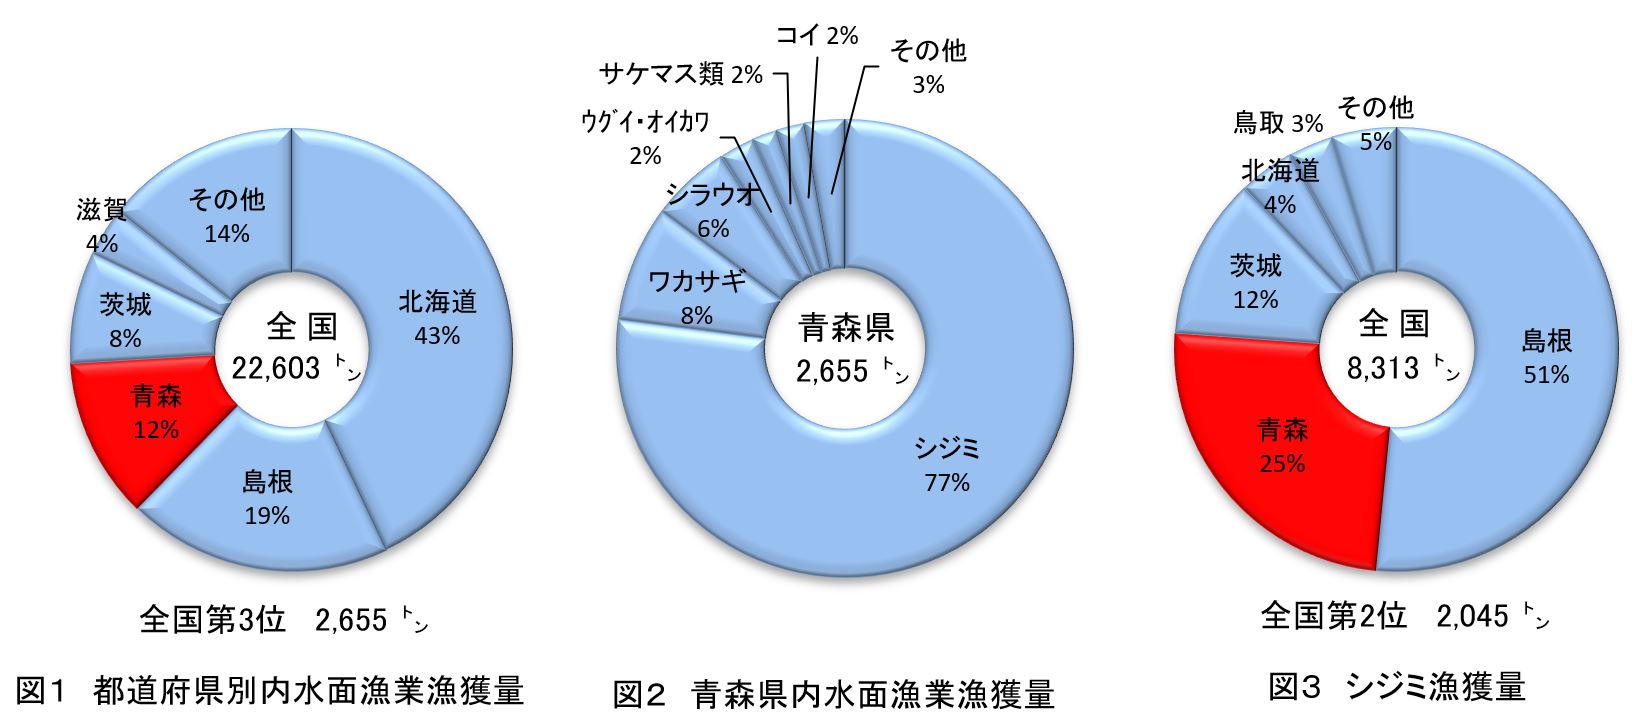 都道府県別内水面漁業漁獲量、青森県内水面漁業漁獲量、シジミ漁獲量のグラフ